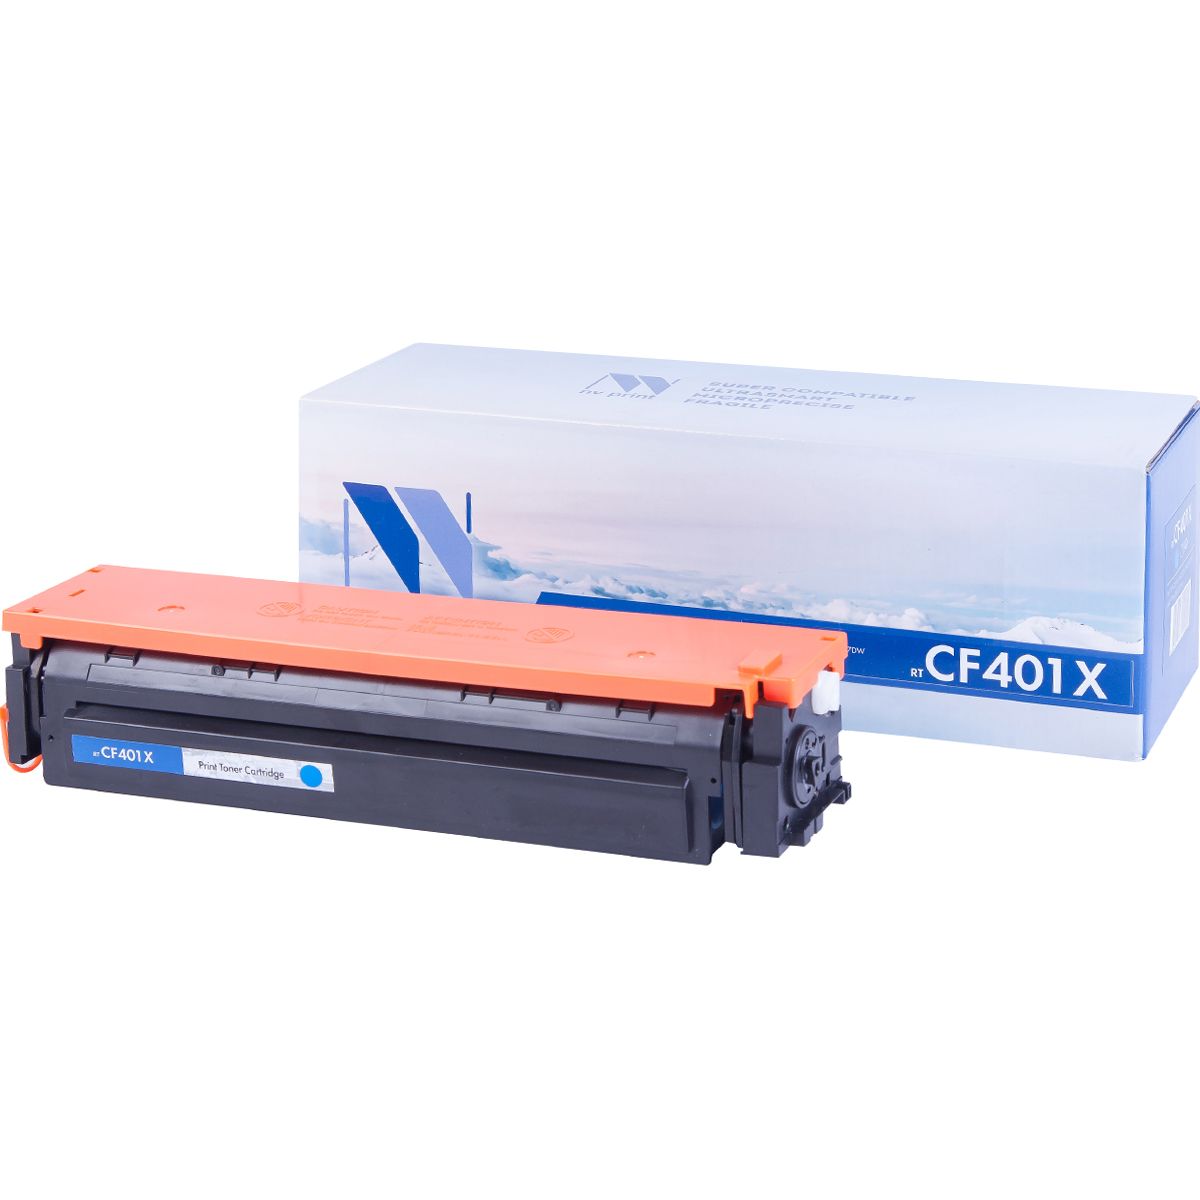 

Картридж для лазерного принтера NV Print CF401XC, голубой, NV-CF401XC